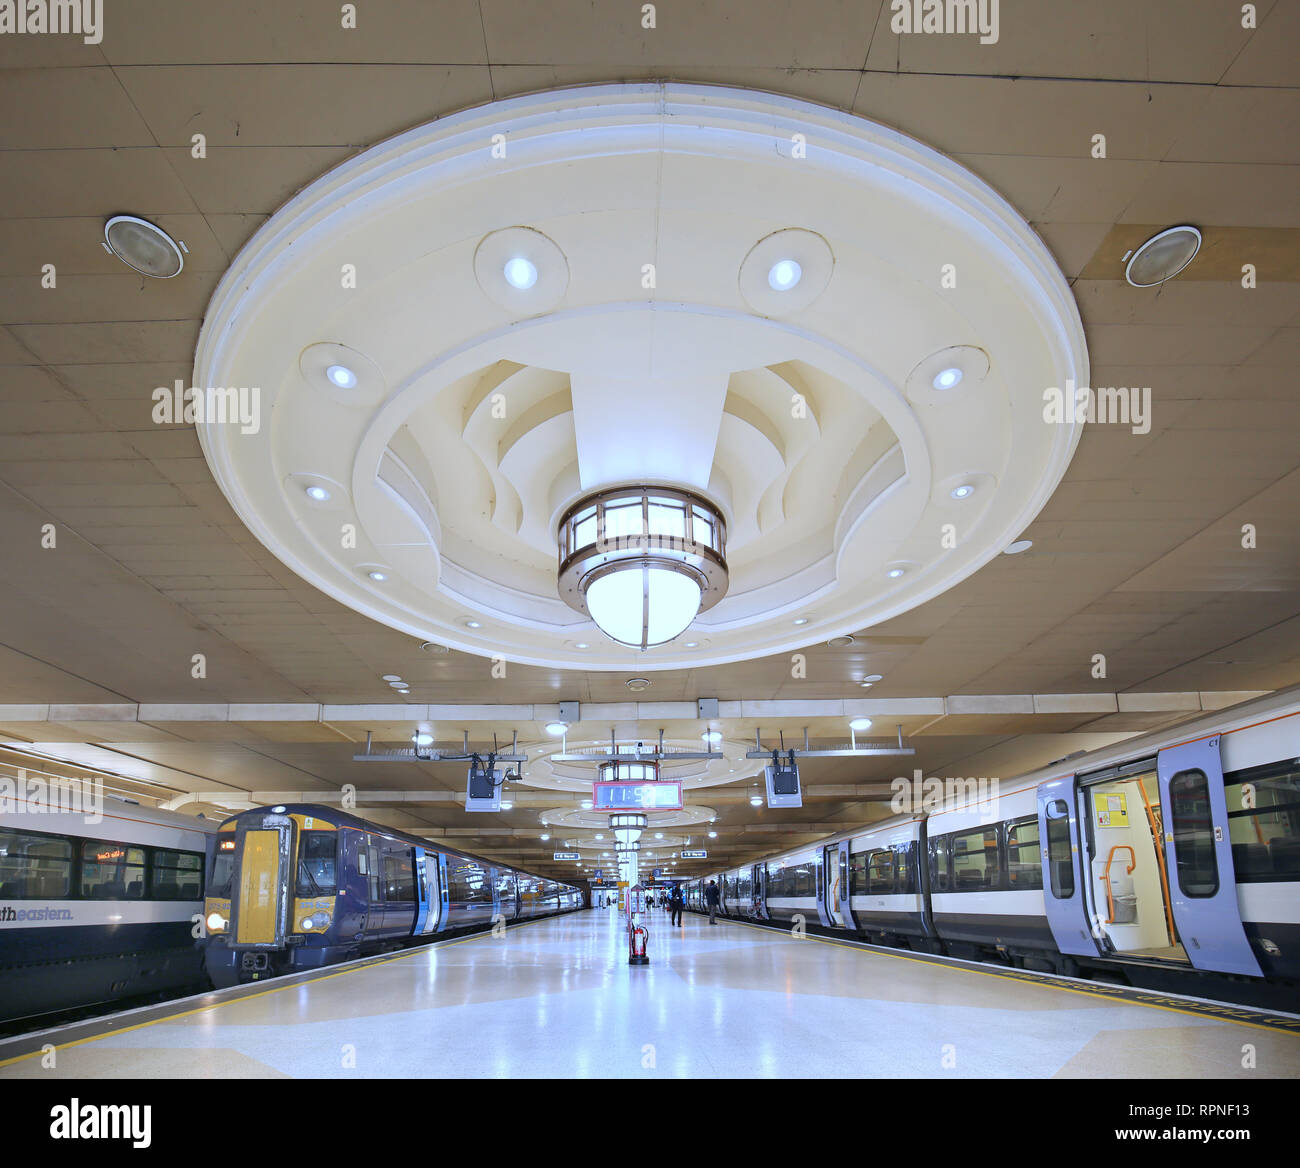 Plattform in der Londoner Charing Cross Bahnhof zeigt die Decke im Art déco-Stil Beleuchtung im Laufe der 90er Jahre Wiederaufbau installiert. Stockfoto